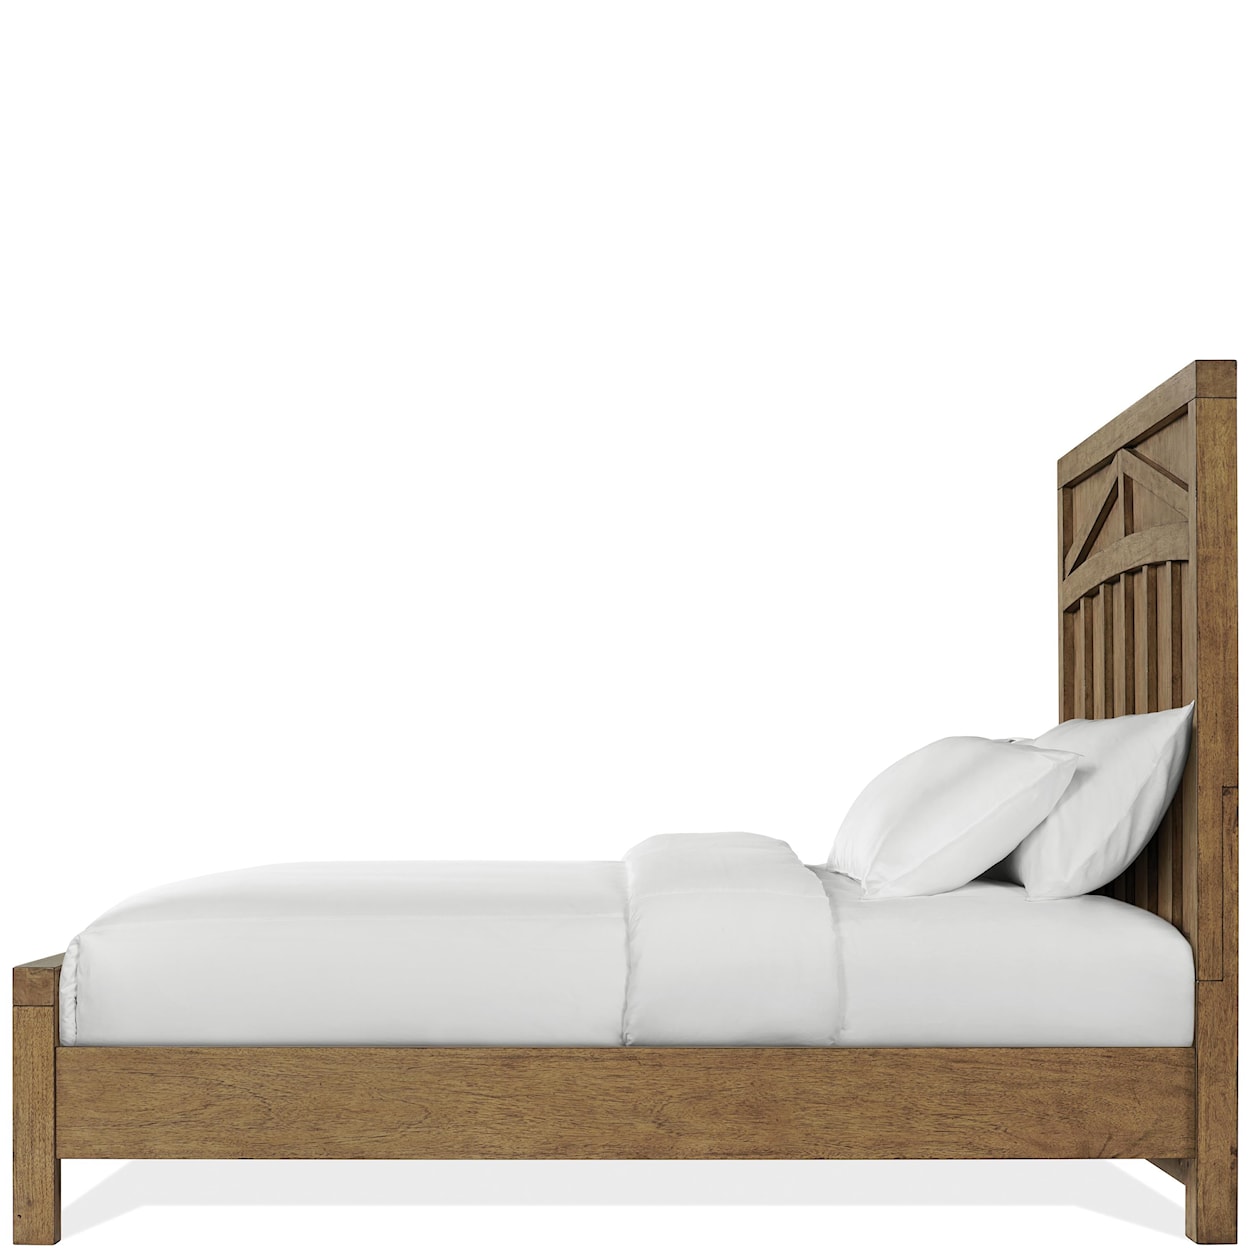 Riverside Furniture Bozeman Queen Panel Bed